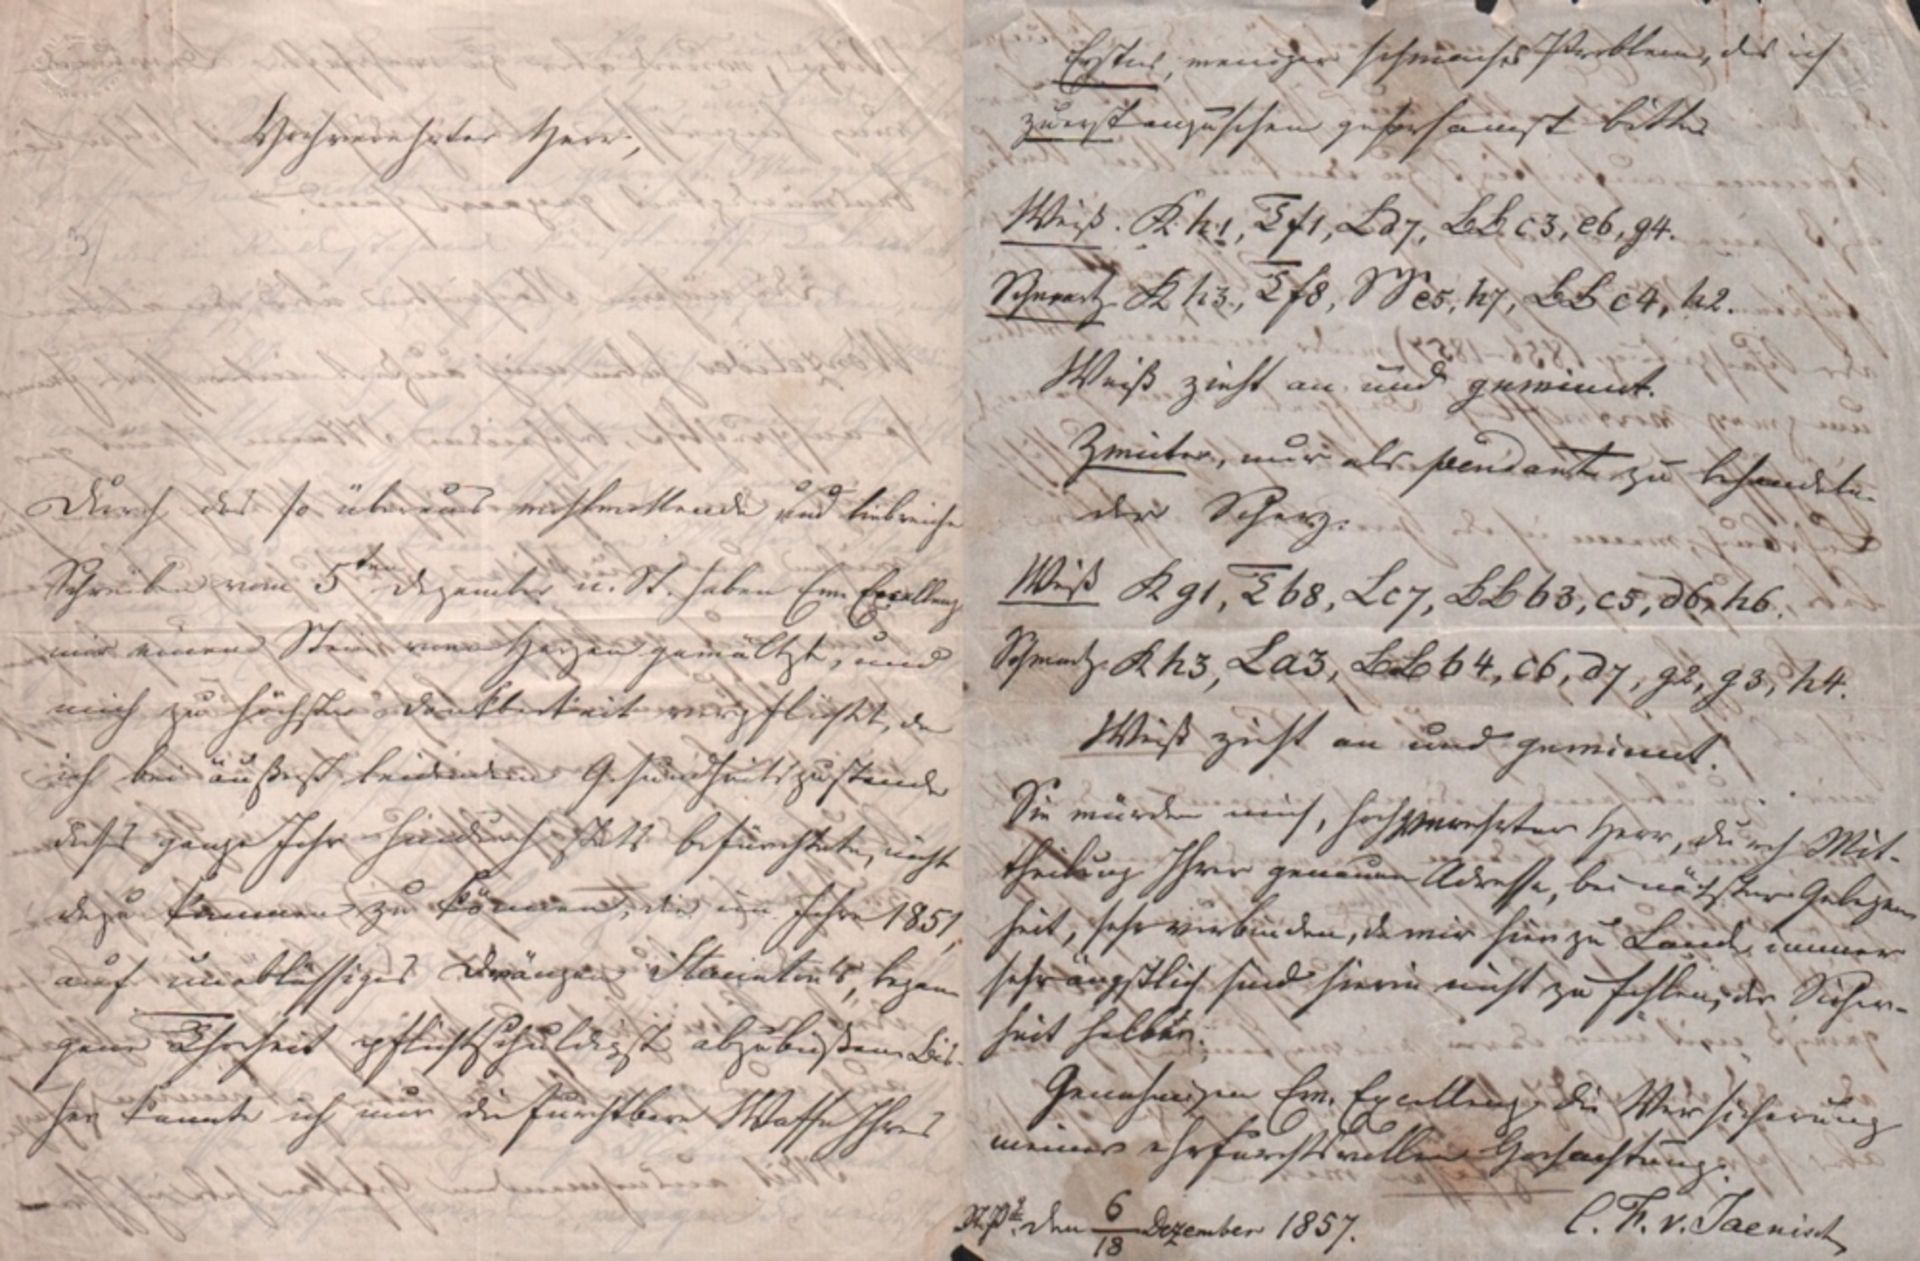 Jaenisch, Carl Friedrich v. Eigenhändig geschriebener Brief, den C. F. v. Jaenisch an einen nicht